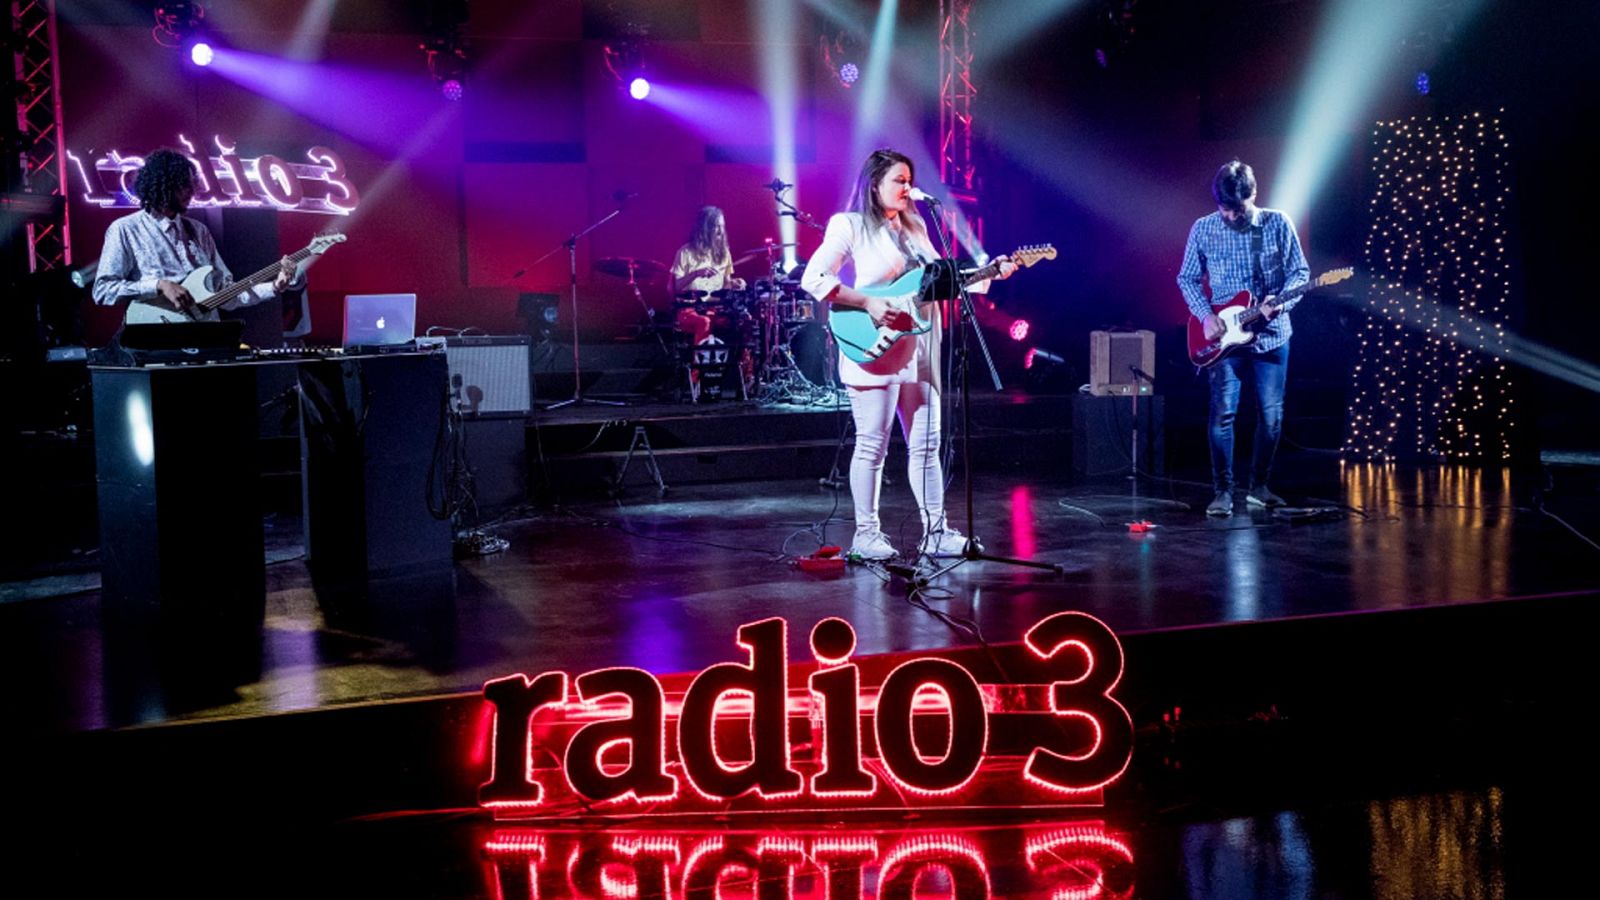 Los conciertos de Radio 3 - Rosk 